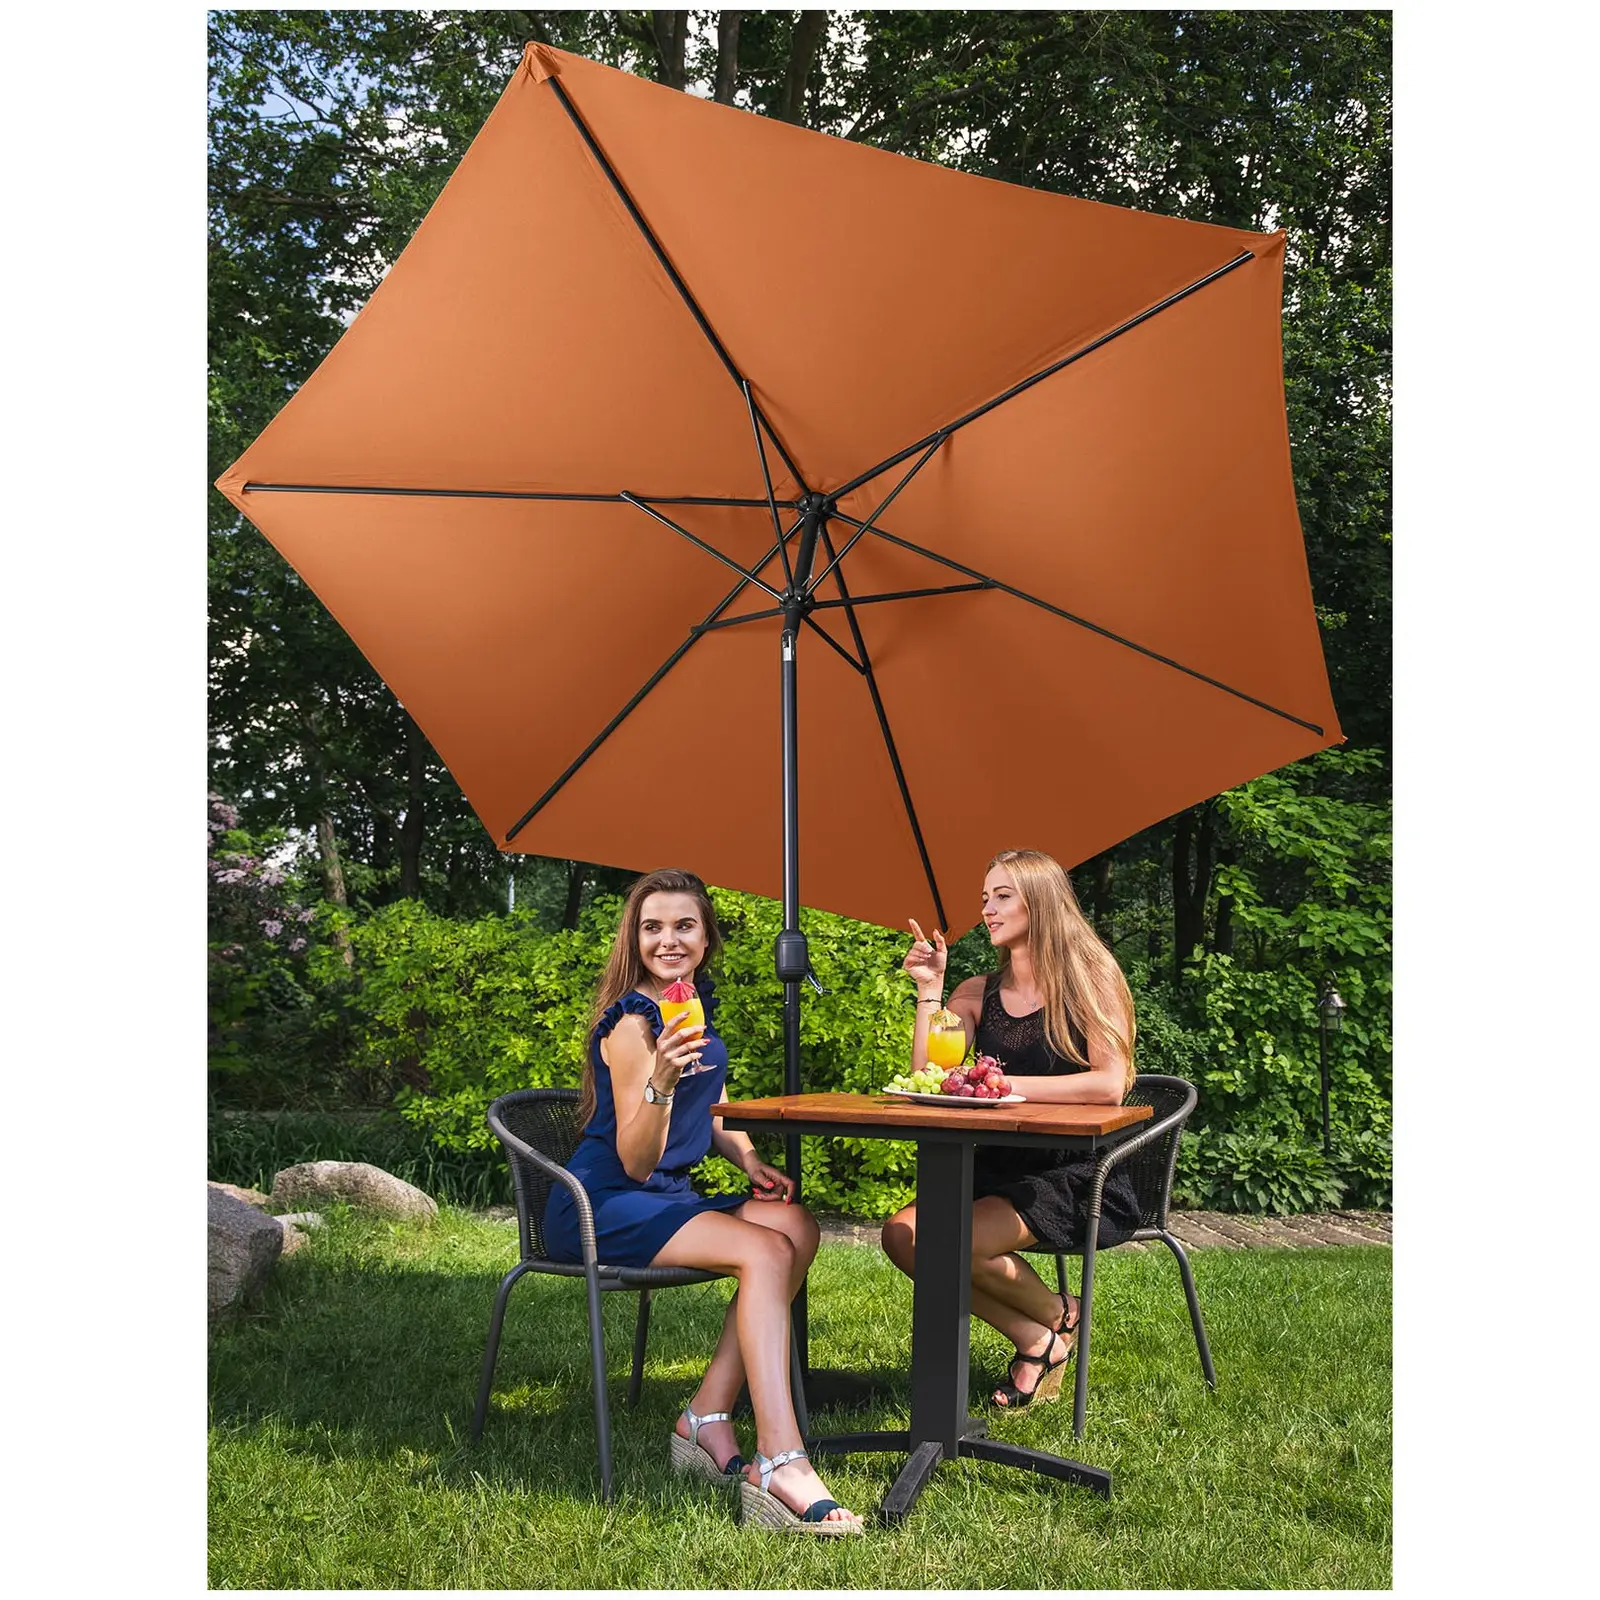 Sonnenschirm groß - orange - sechseckig - Ø 300 cm - neigbar